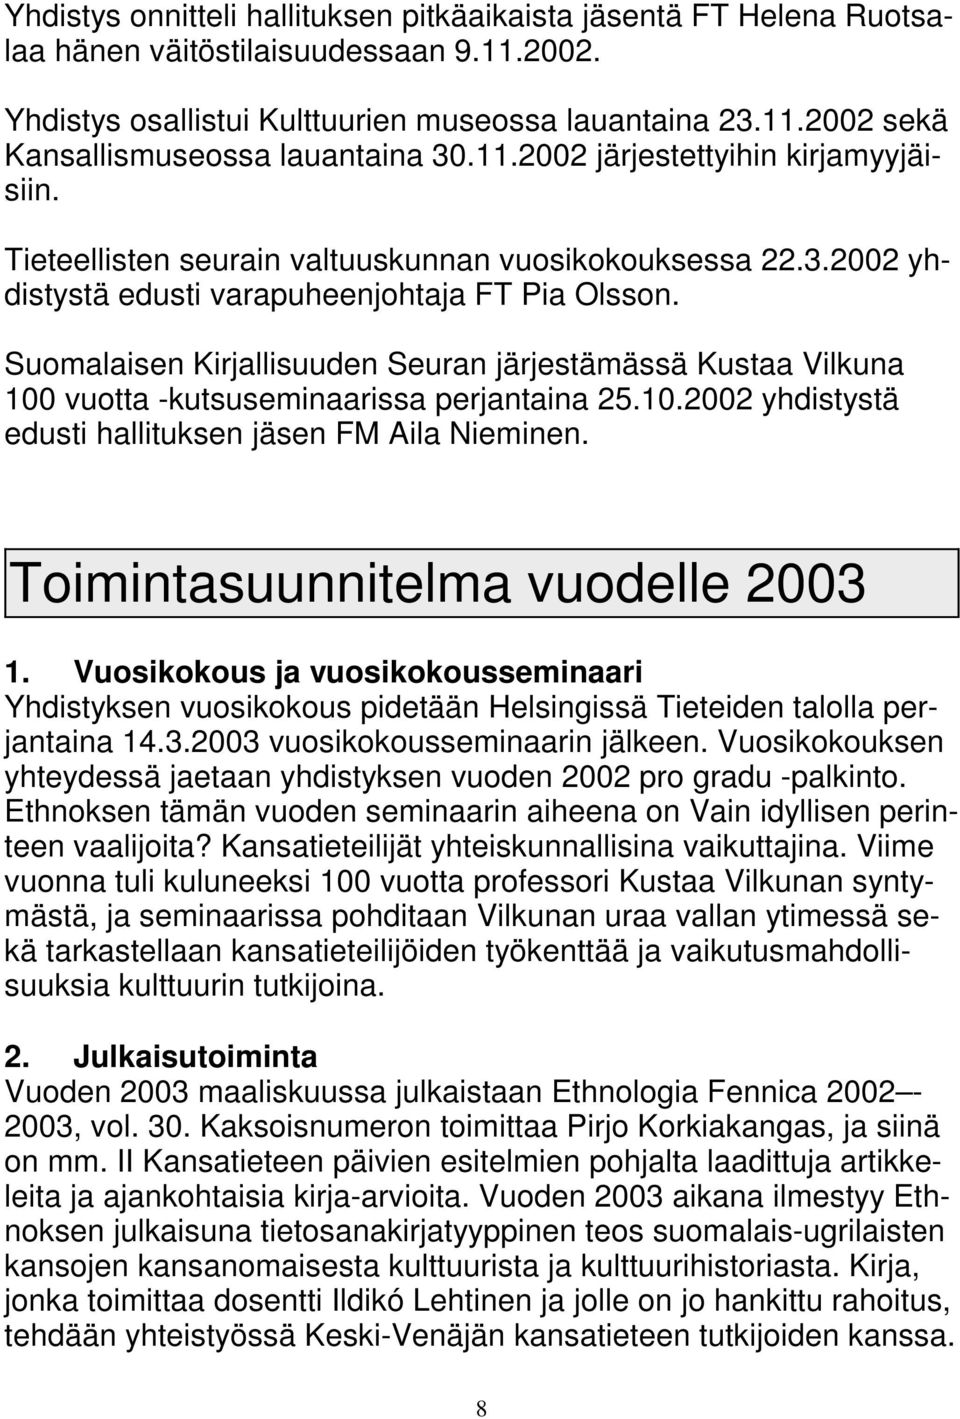 Suomalaisen Kirjallisuuden Seuran järjestämässä Kustaa Vilkuna 100 vuotta -kutsuseminaarissa perjantaina 25.10.2002 yhdistystä edusti hallituksen jäsen FM Aila Nieminen.